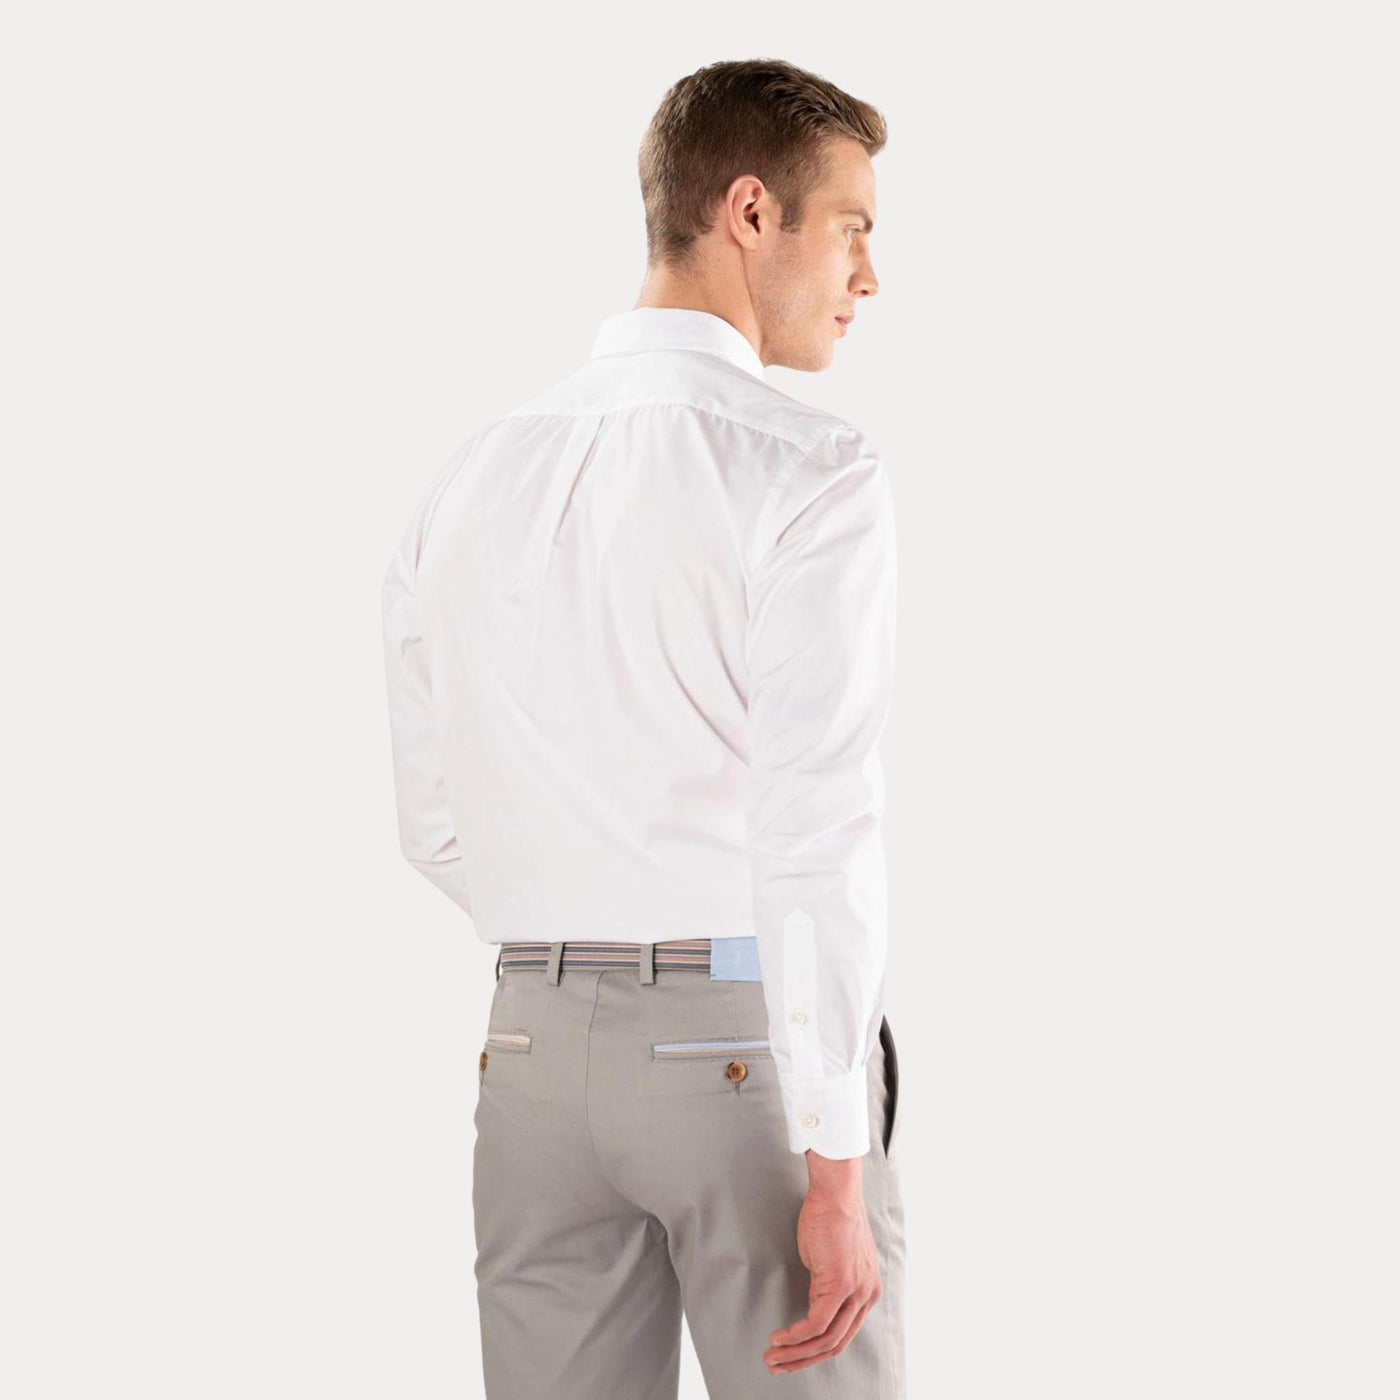 camicia bianca uomo con polsini con retro a contrasto retro